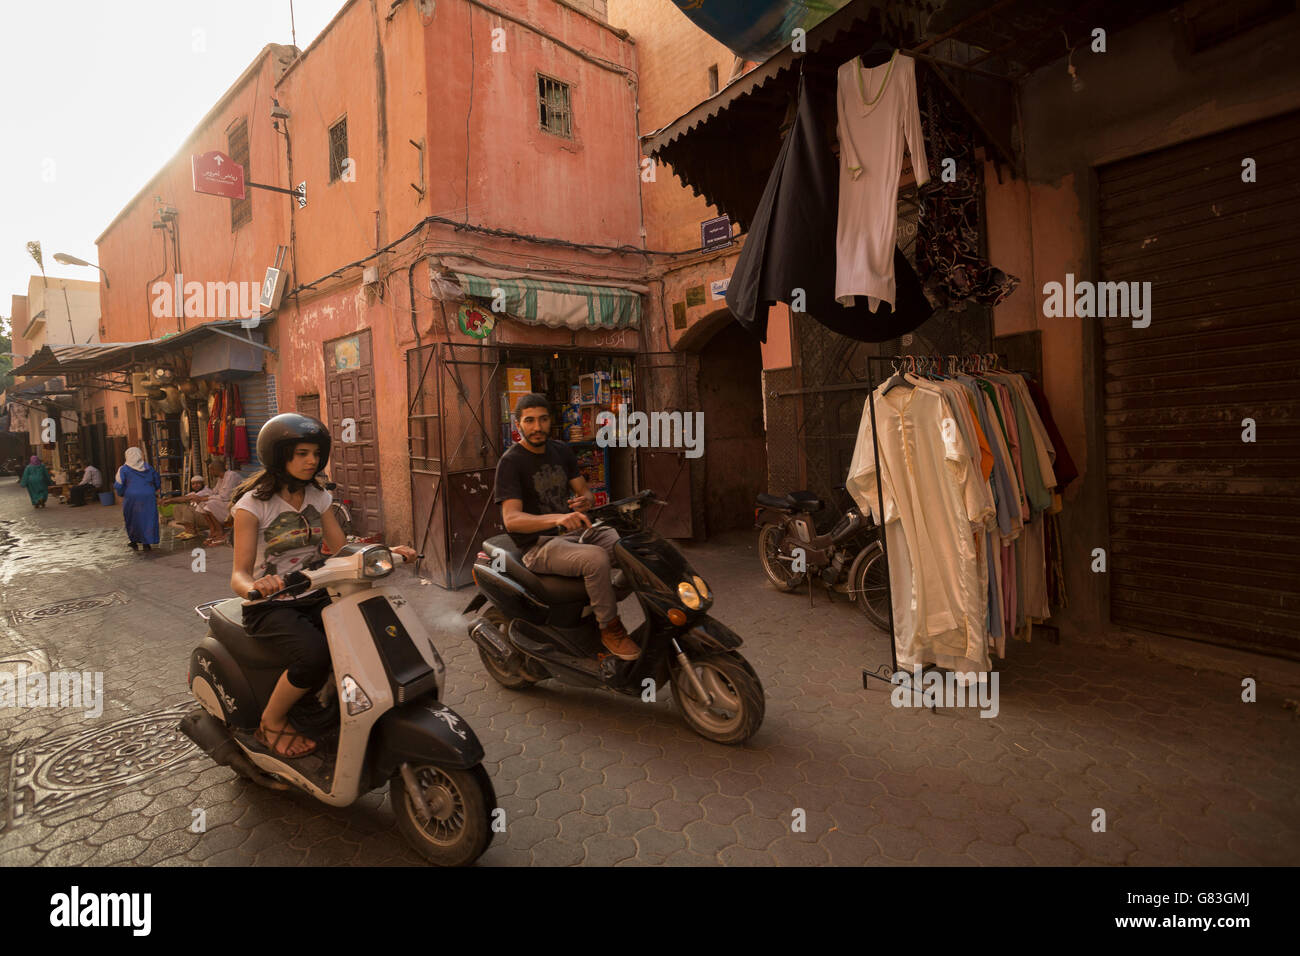 Lokale Einwohner und Touristen Strich durch die engen Gassen von Marrakesch Medina, Marokko. Stockfoto